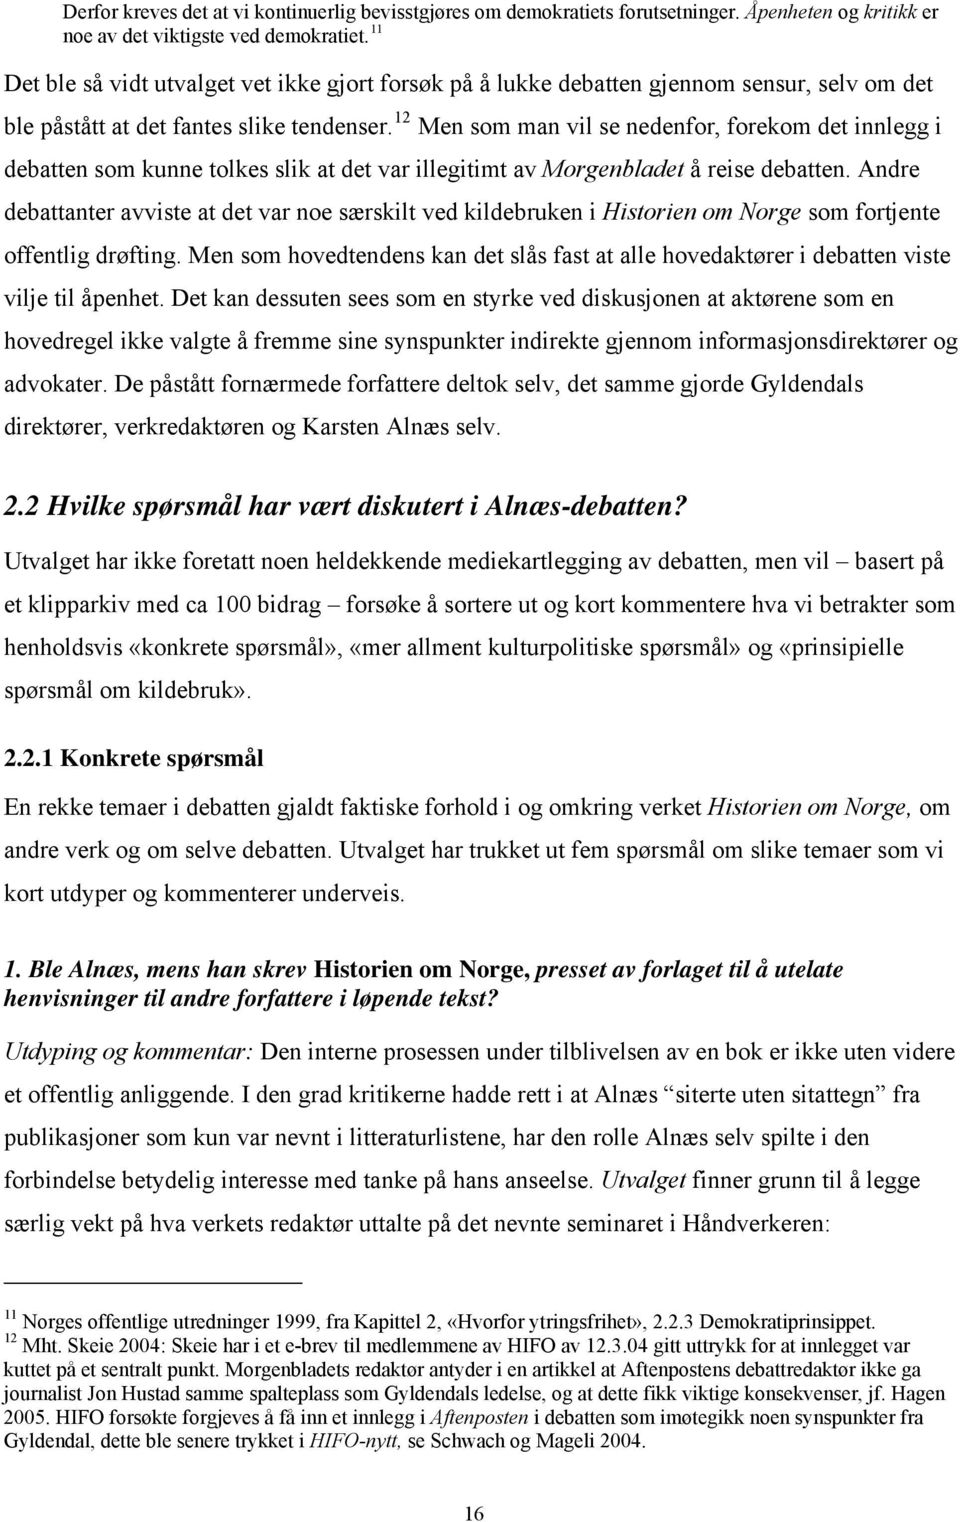 12 Men som man vil se nedenfor, forekom det innlegg i debatten som kunne tolkes slik at det var illegitimt av Morgenbladet å reise debatten.